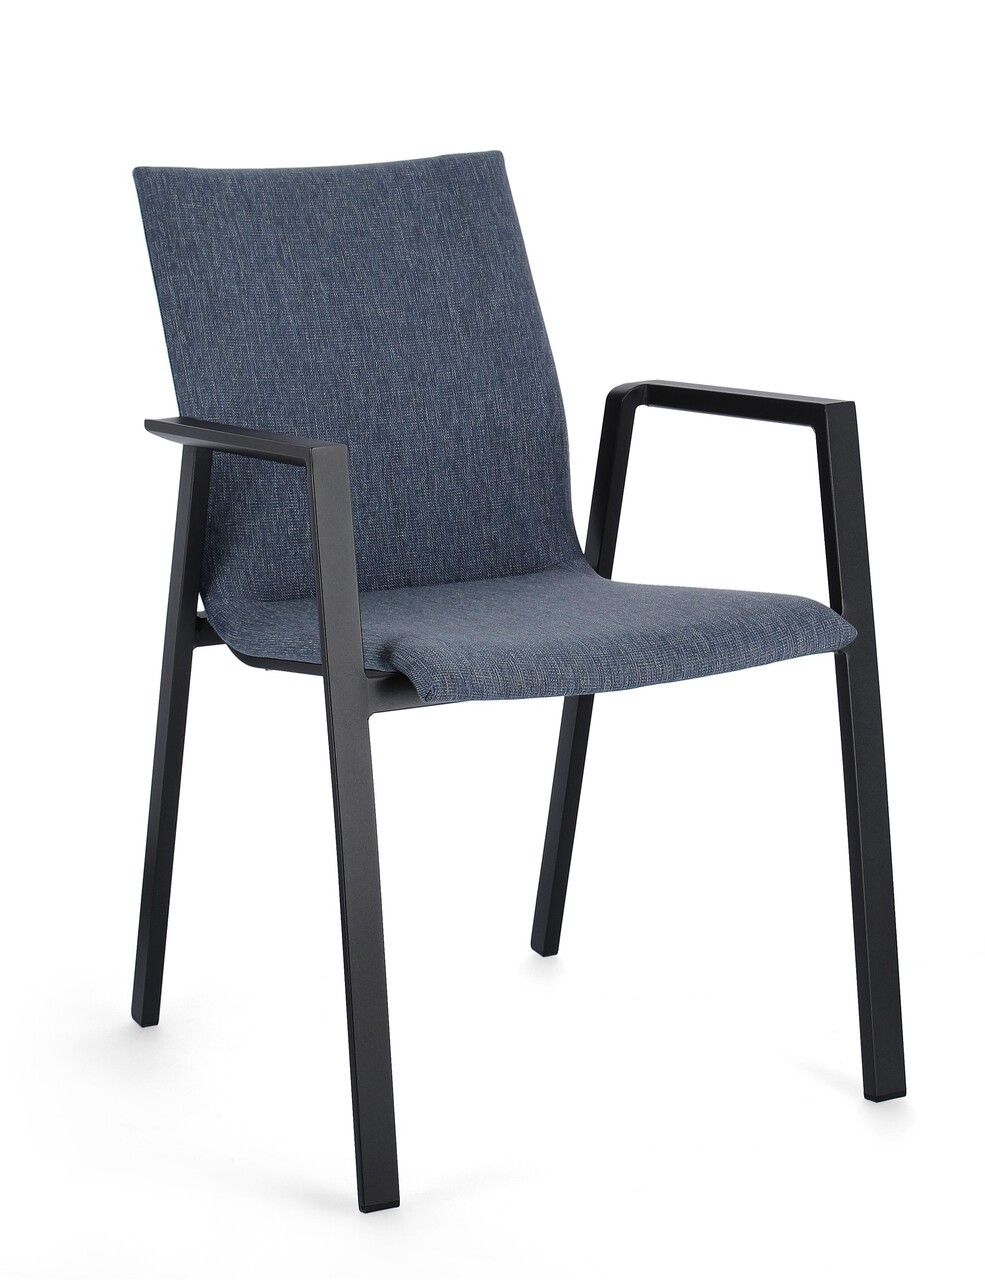 Odeon Kerti szék, Bizzotto, 55.5 x 60 x 83 cm, alumínium/textilén/ofelin, szénszürke/kék